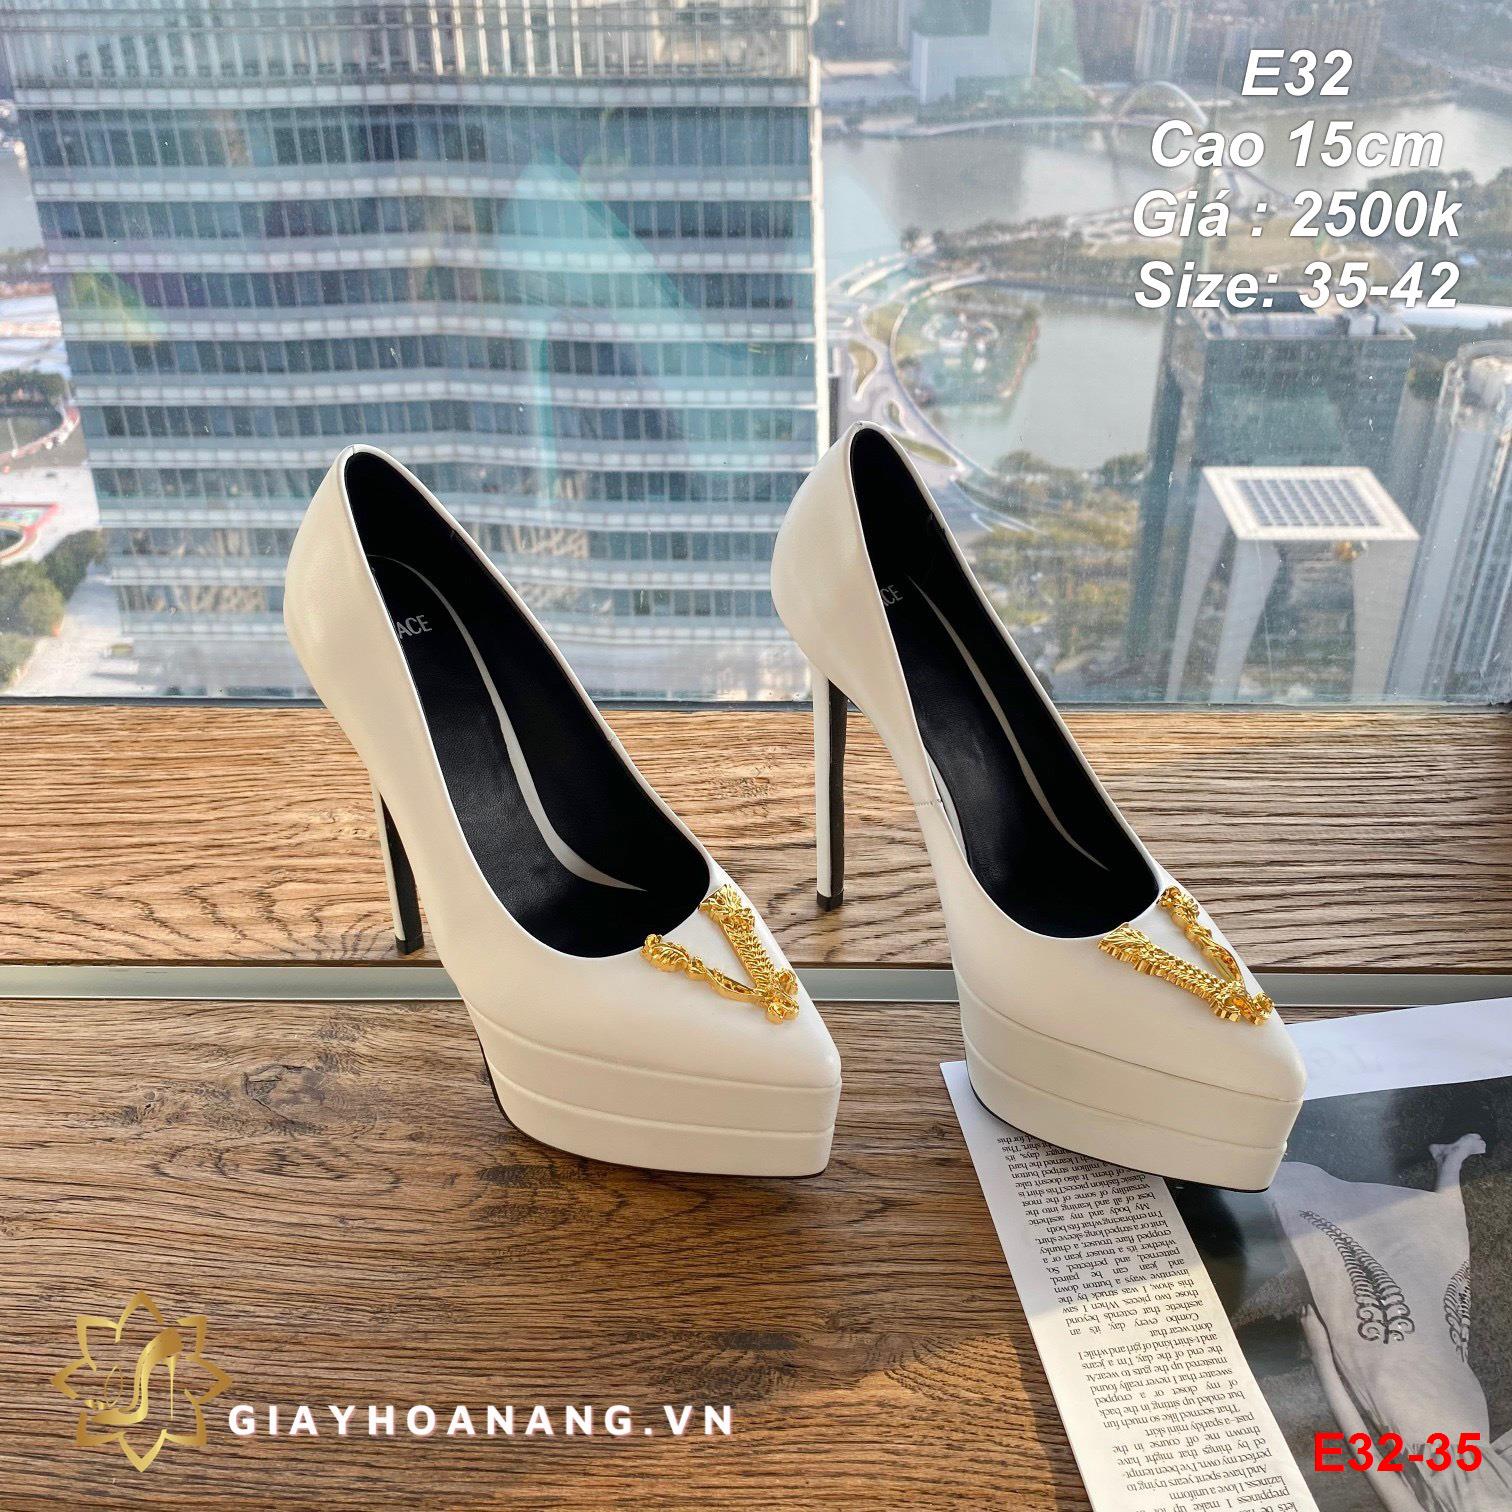 E32-35 Versace giày cao 15cm siêu cấp